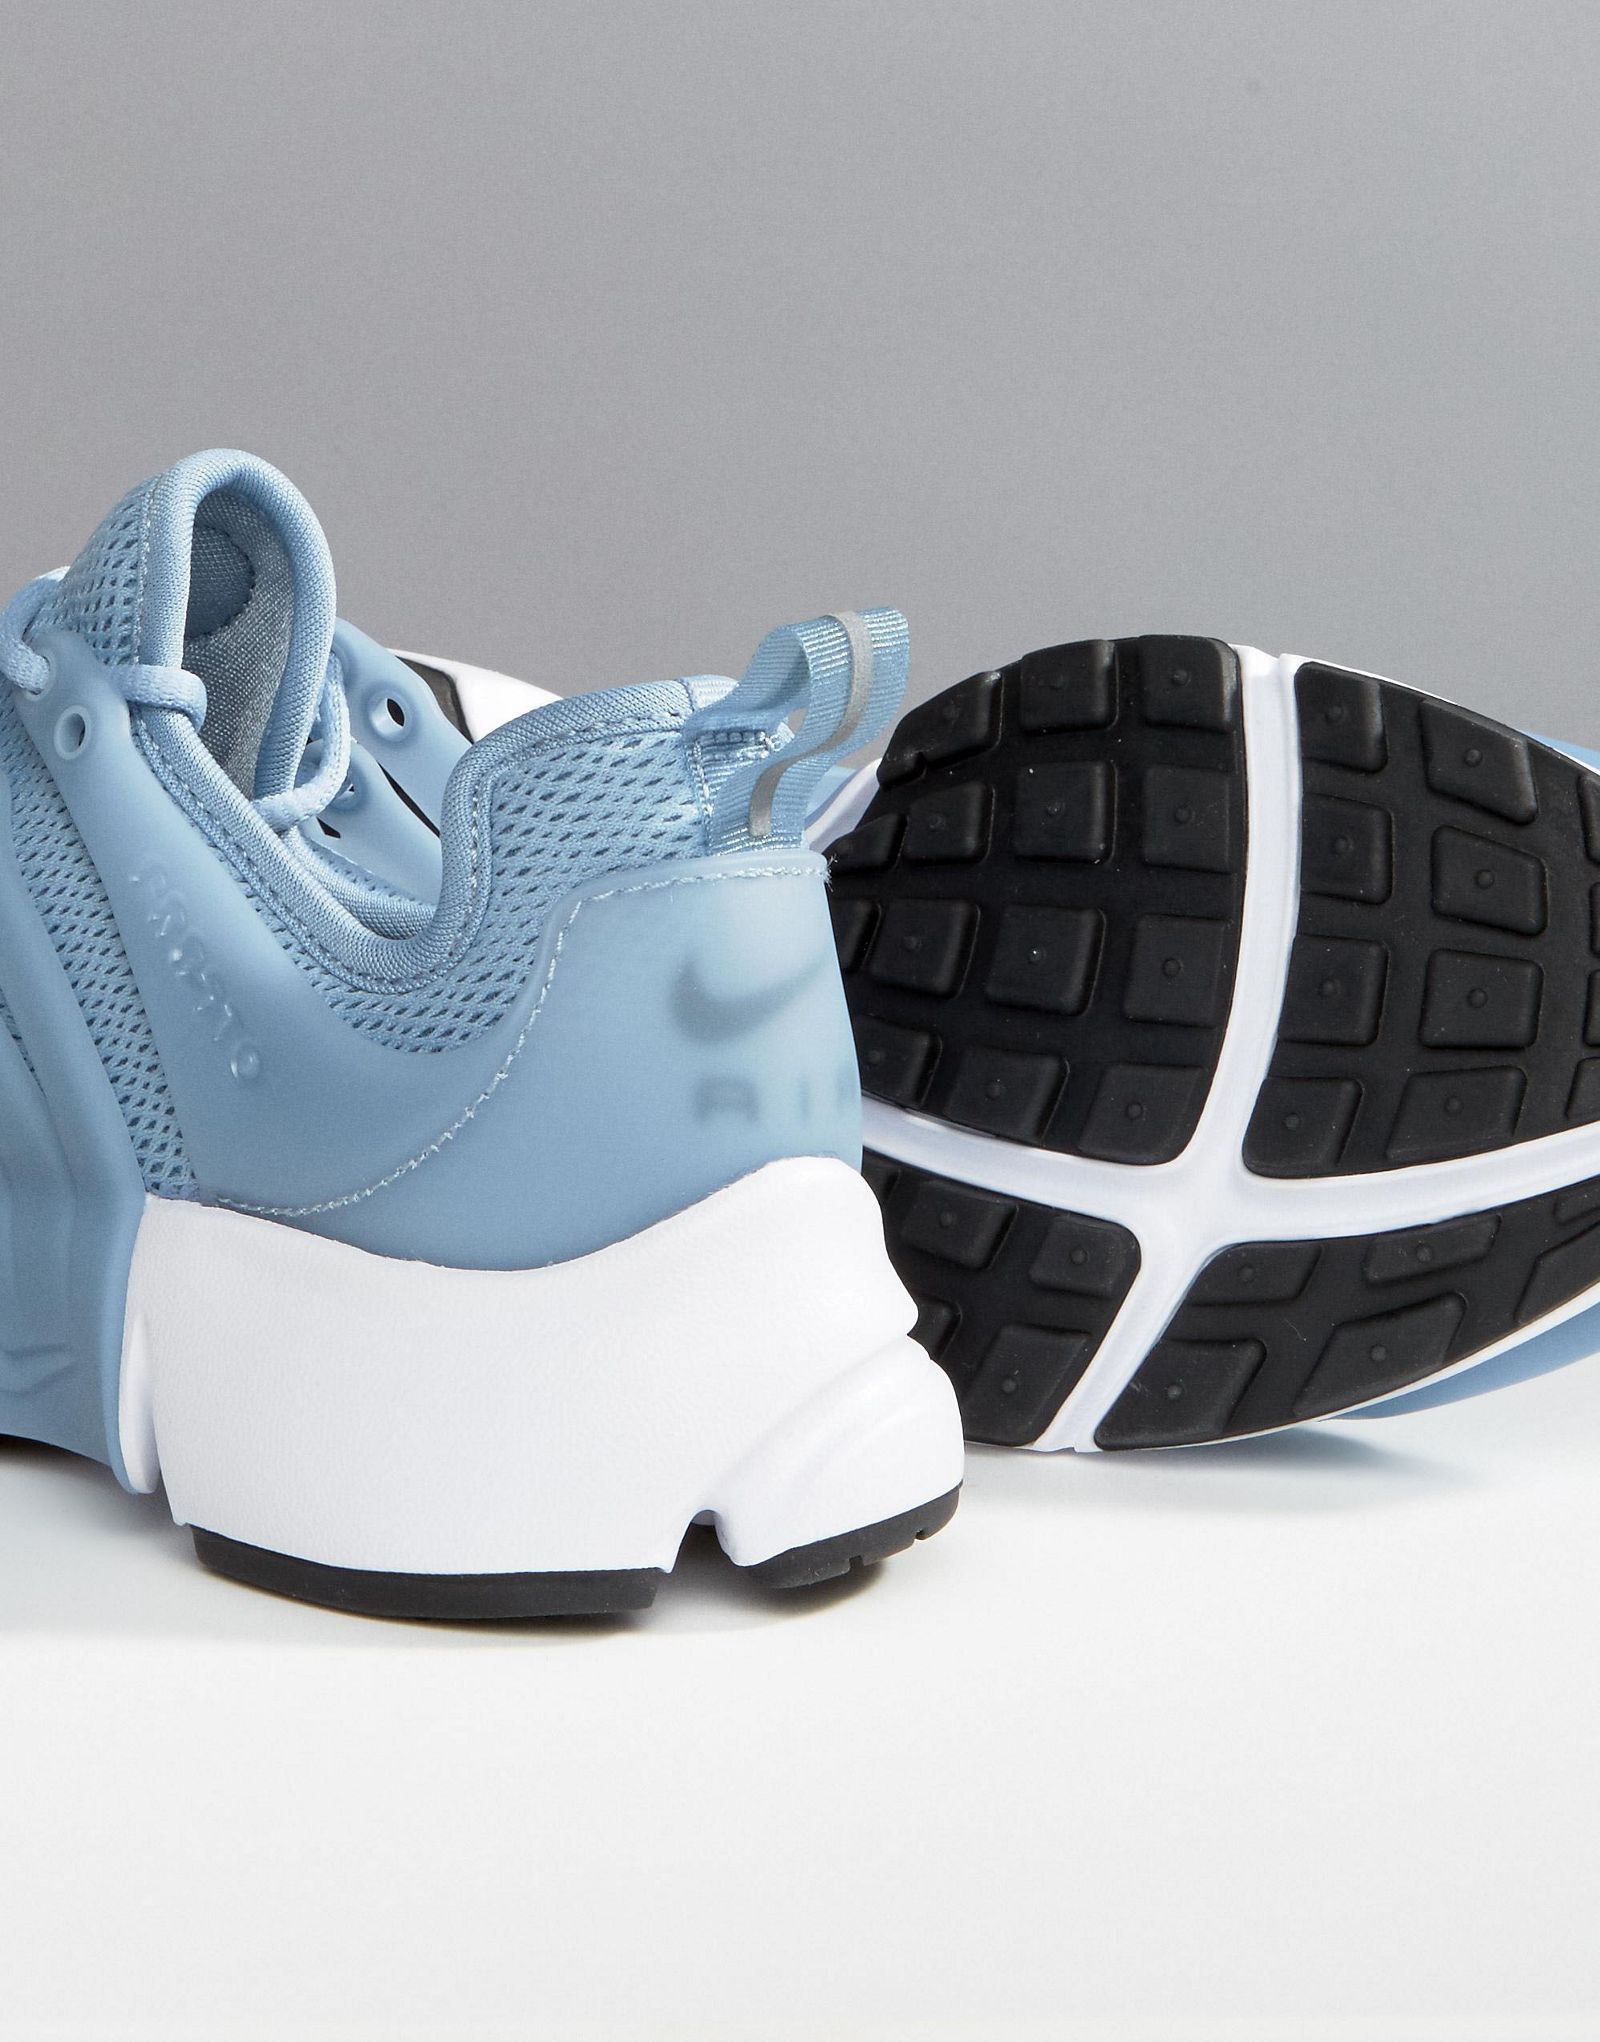 Nike Air Presto Sneakers In Blue Grey